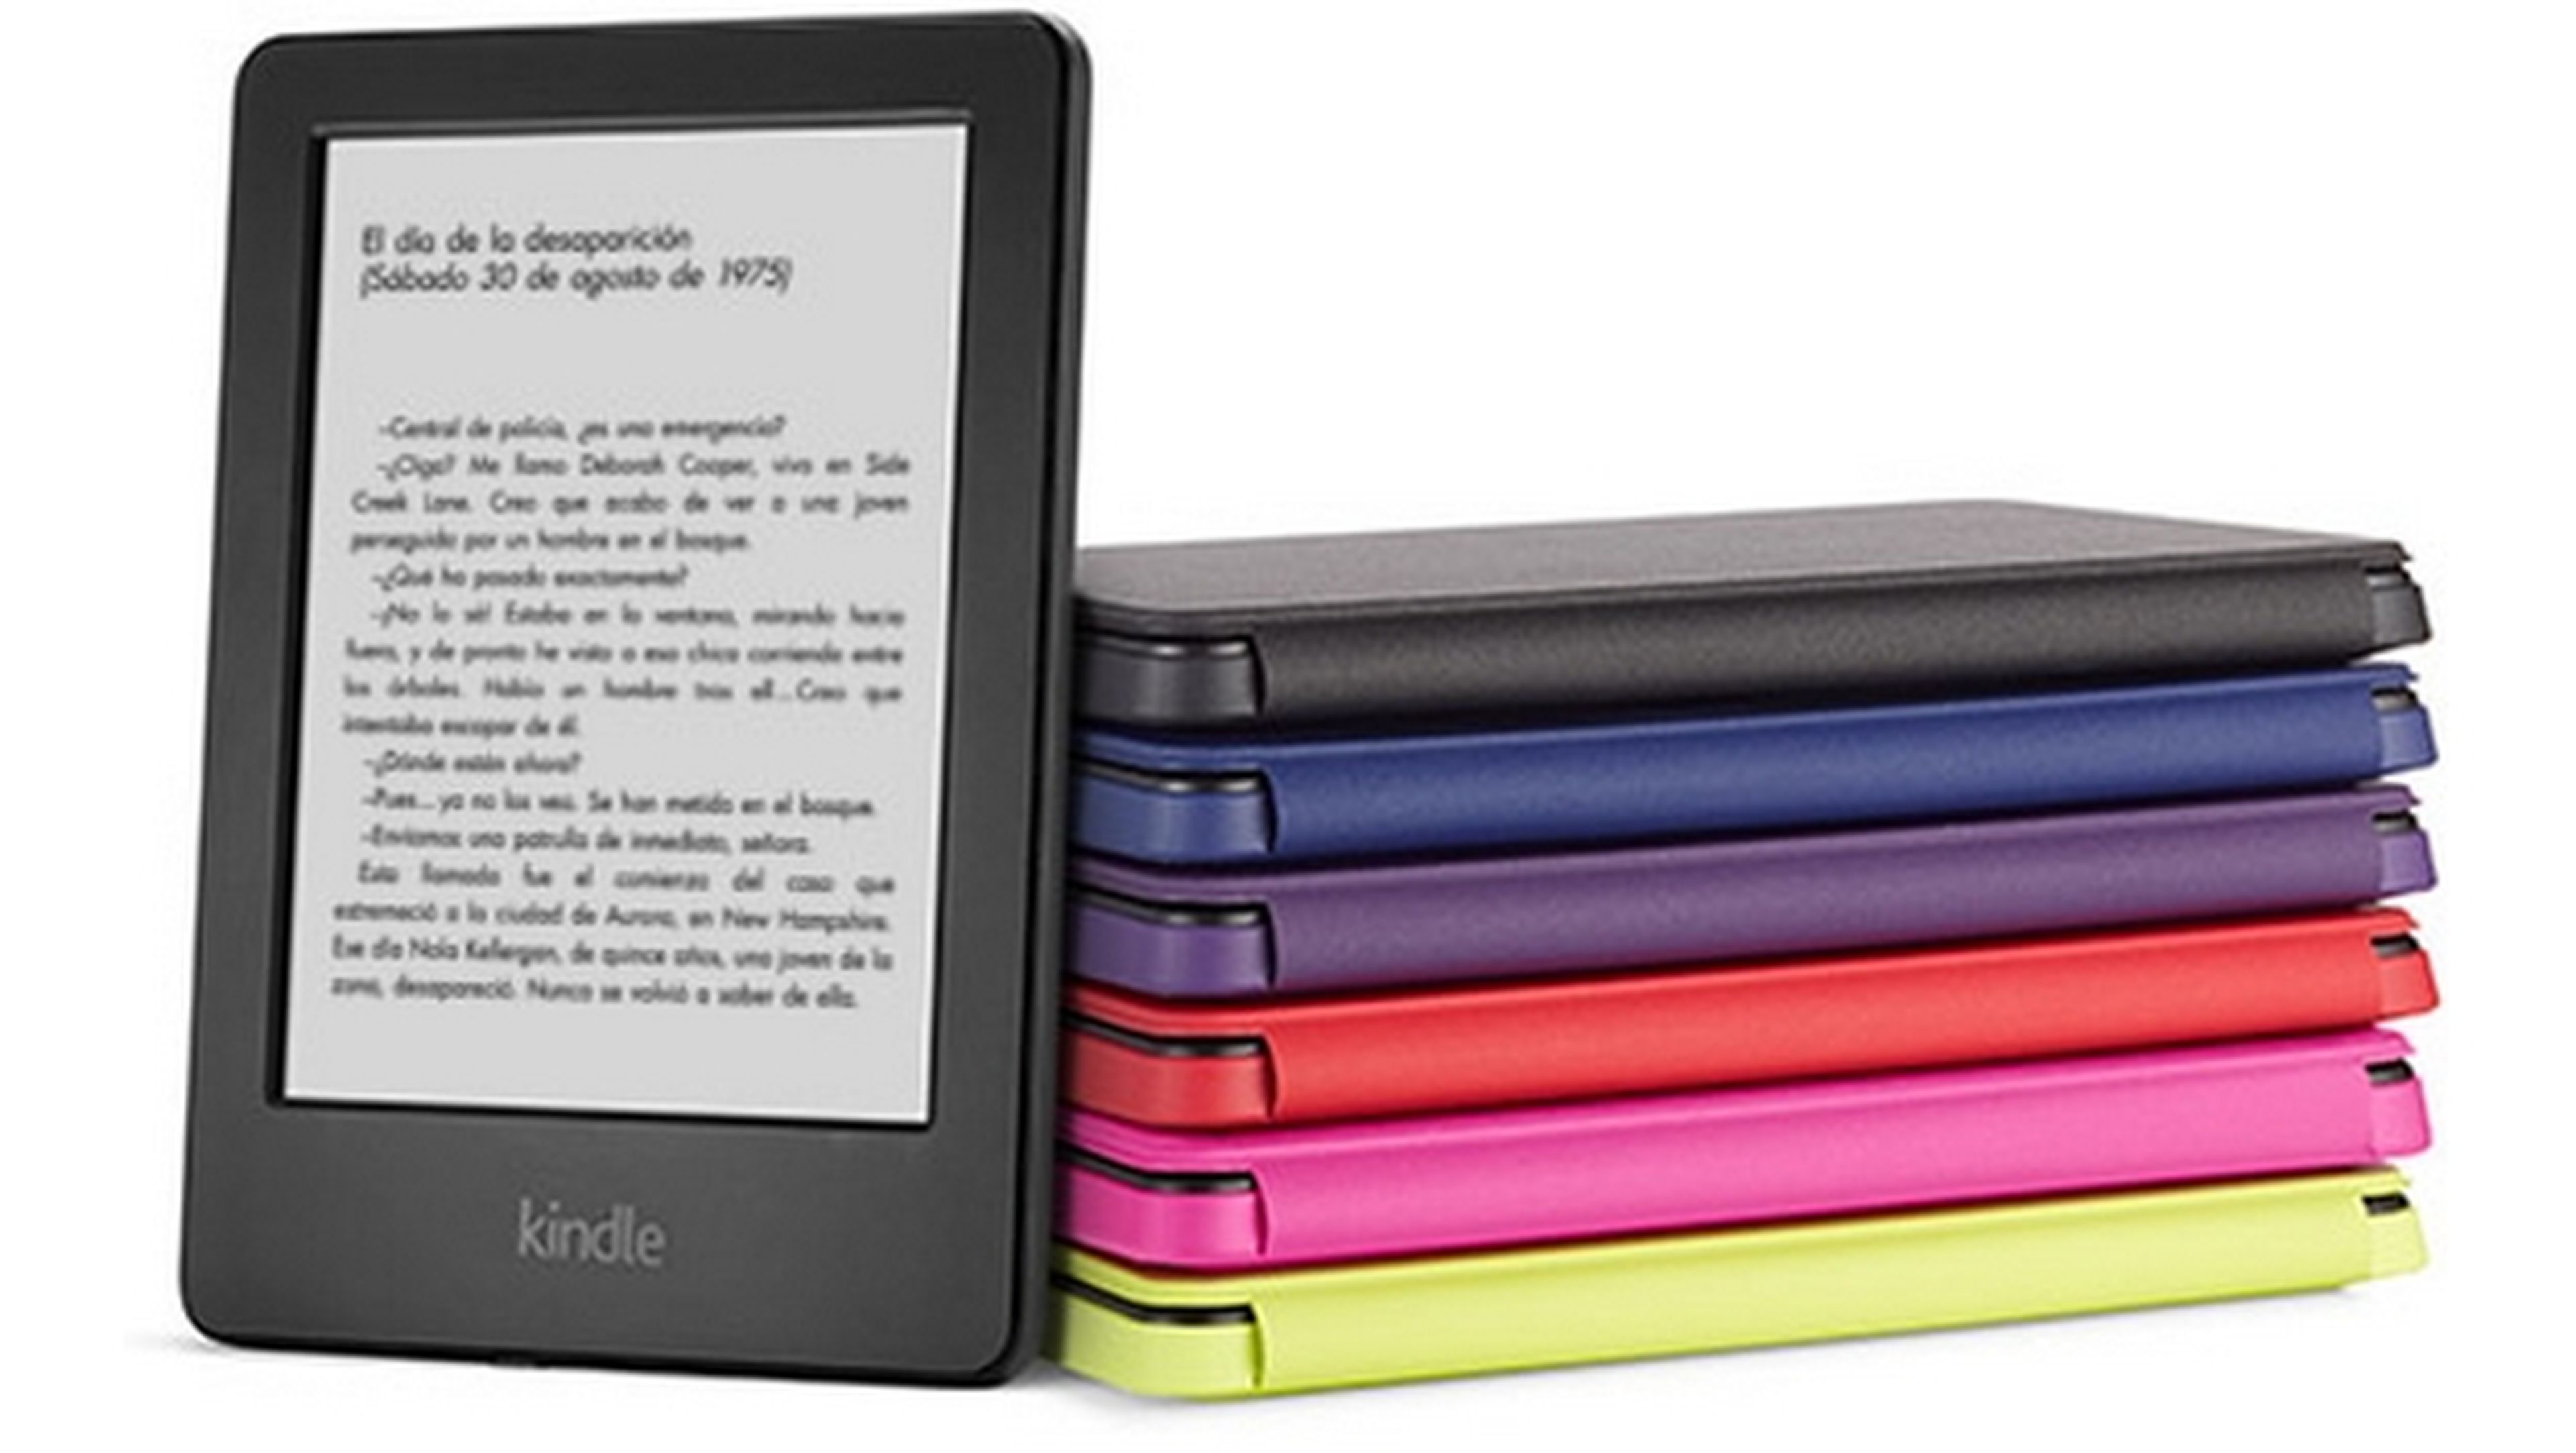 Nuevo Kindle básico mejorado, ahora con pantalla táctil y más memoria, nuevo modo Kindle FreeTime, 79€ en Amazon.